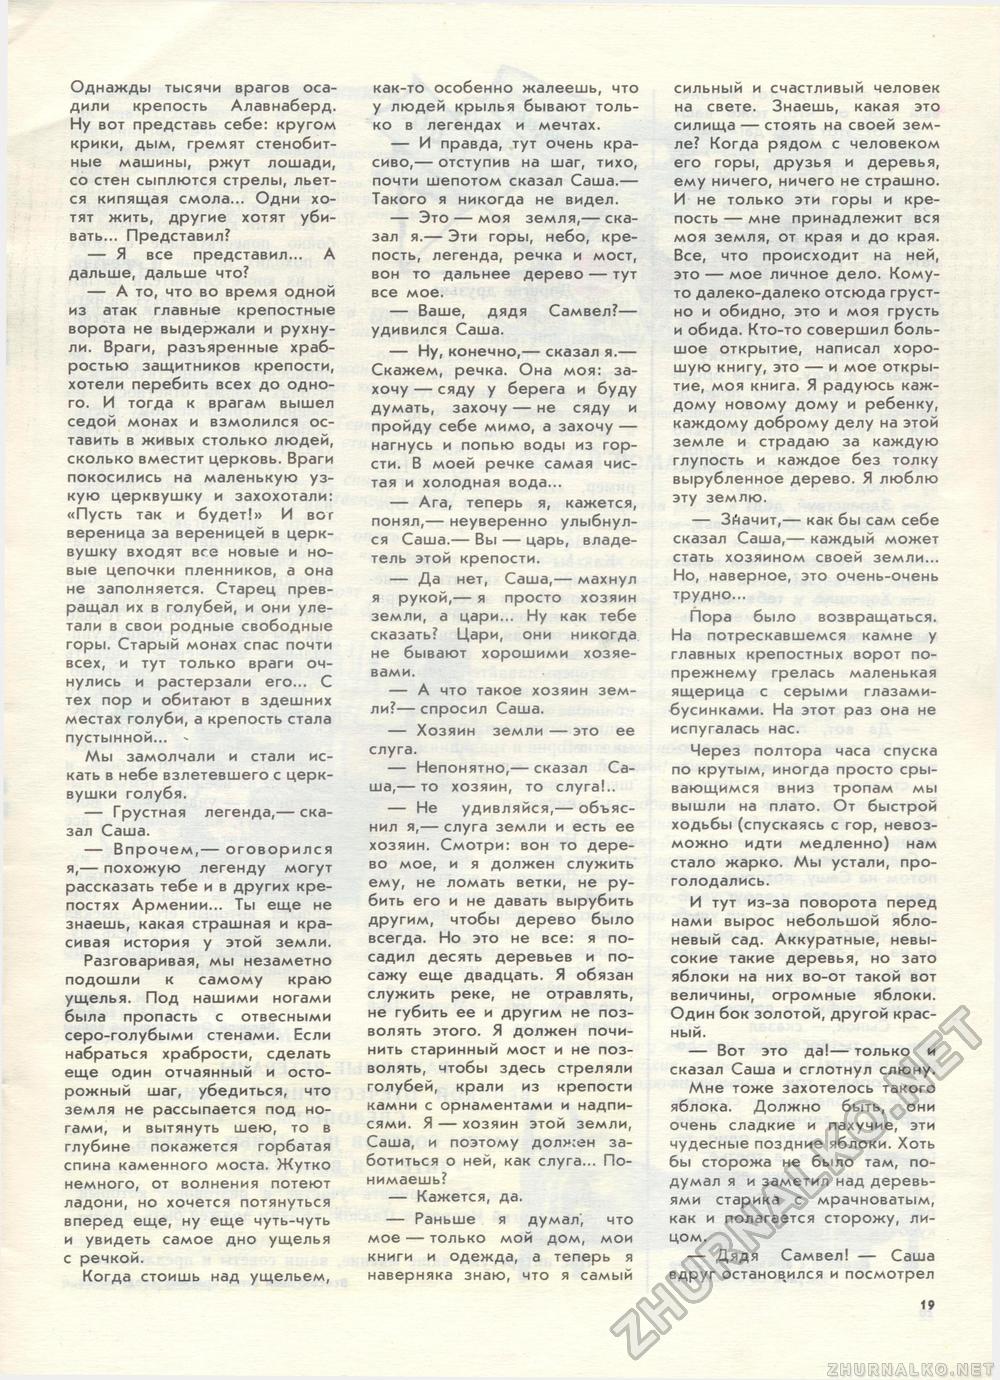  1989-02,  24